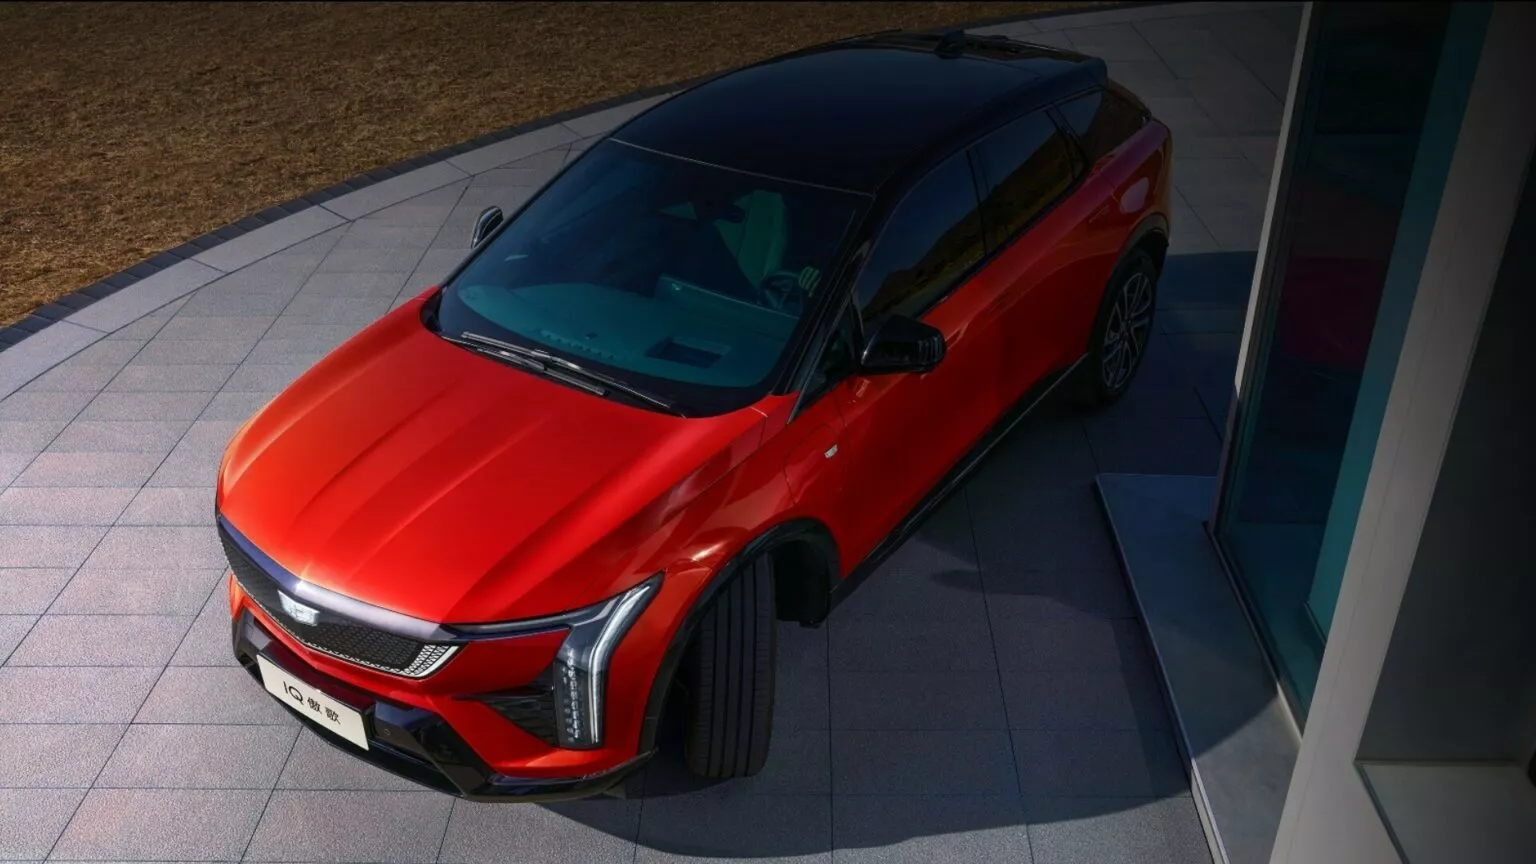 Cadillac Optiq 2025: SUV điện hạng sang giá mềm có sẵn AWD và màn hình 33 inch 2025-cadillac-optiq-china-spec-429-9-1536x864.webp